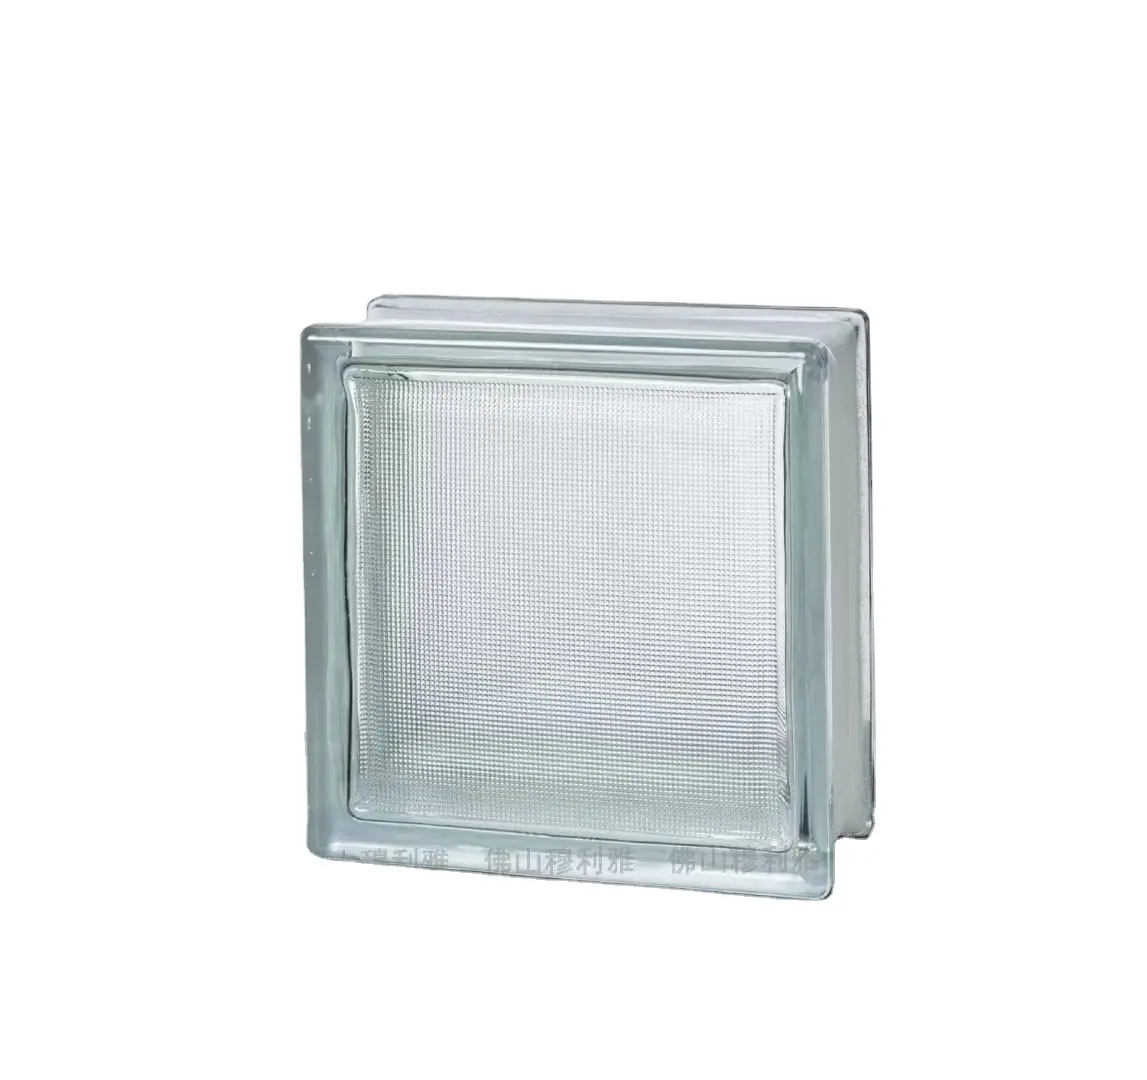 Mattone di vetro di alta qualità del blocco di vetro di colore bianco di 190x190x80mm utilizzato per la decorazione o la parete divisoria